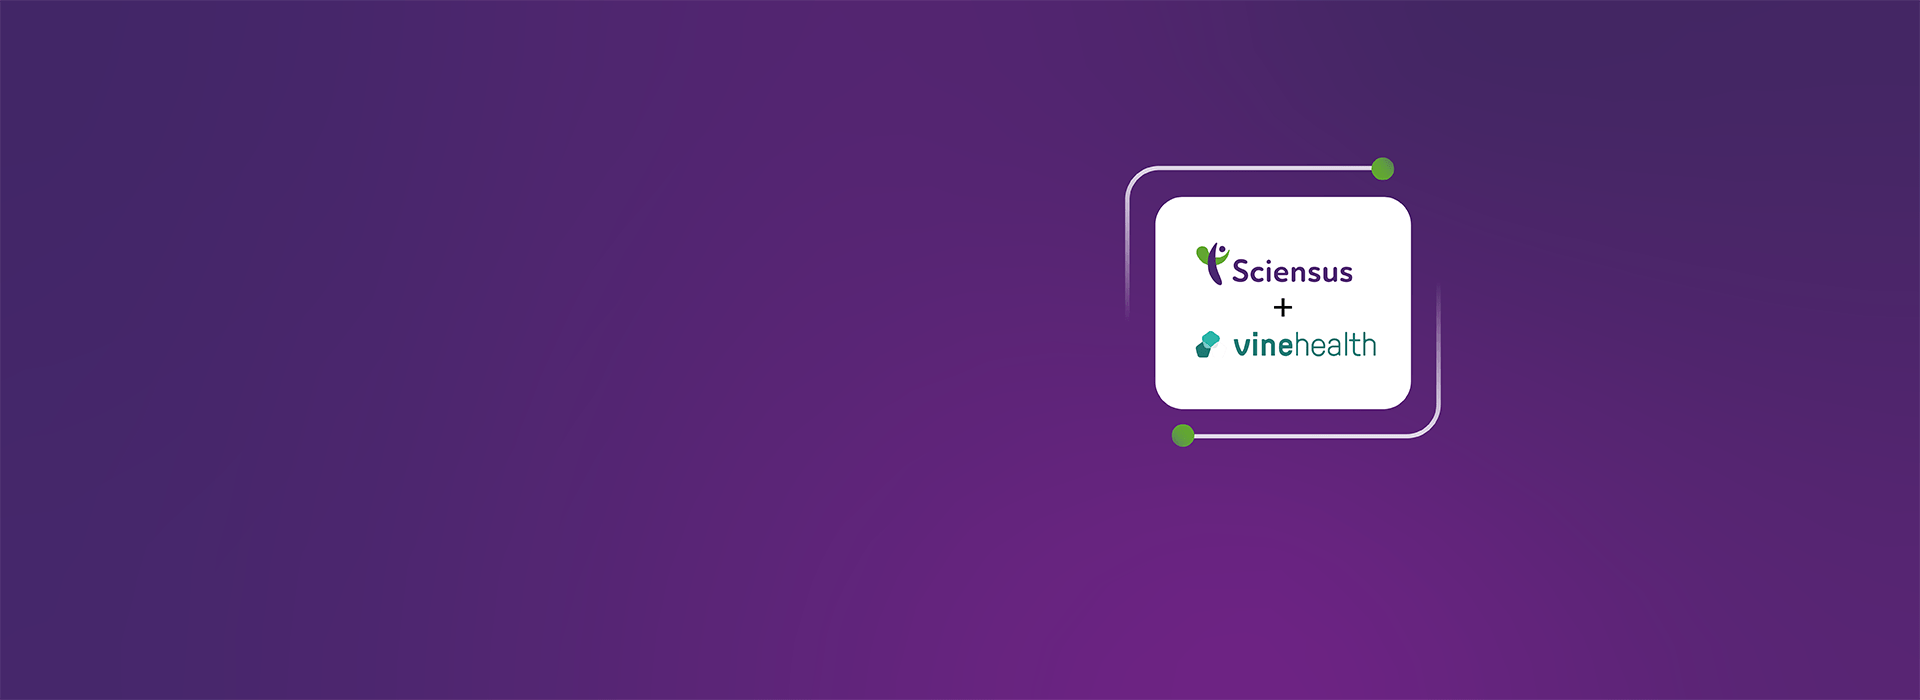 Sciensus acquires Vinehealth